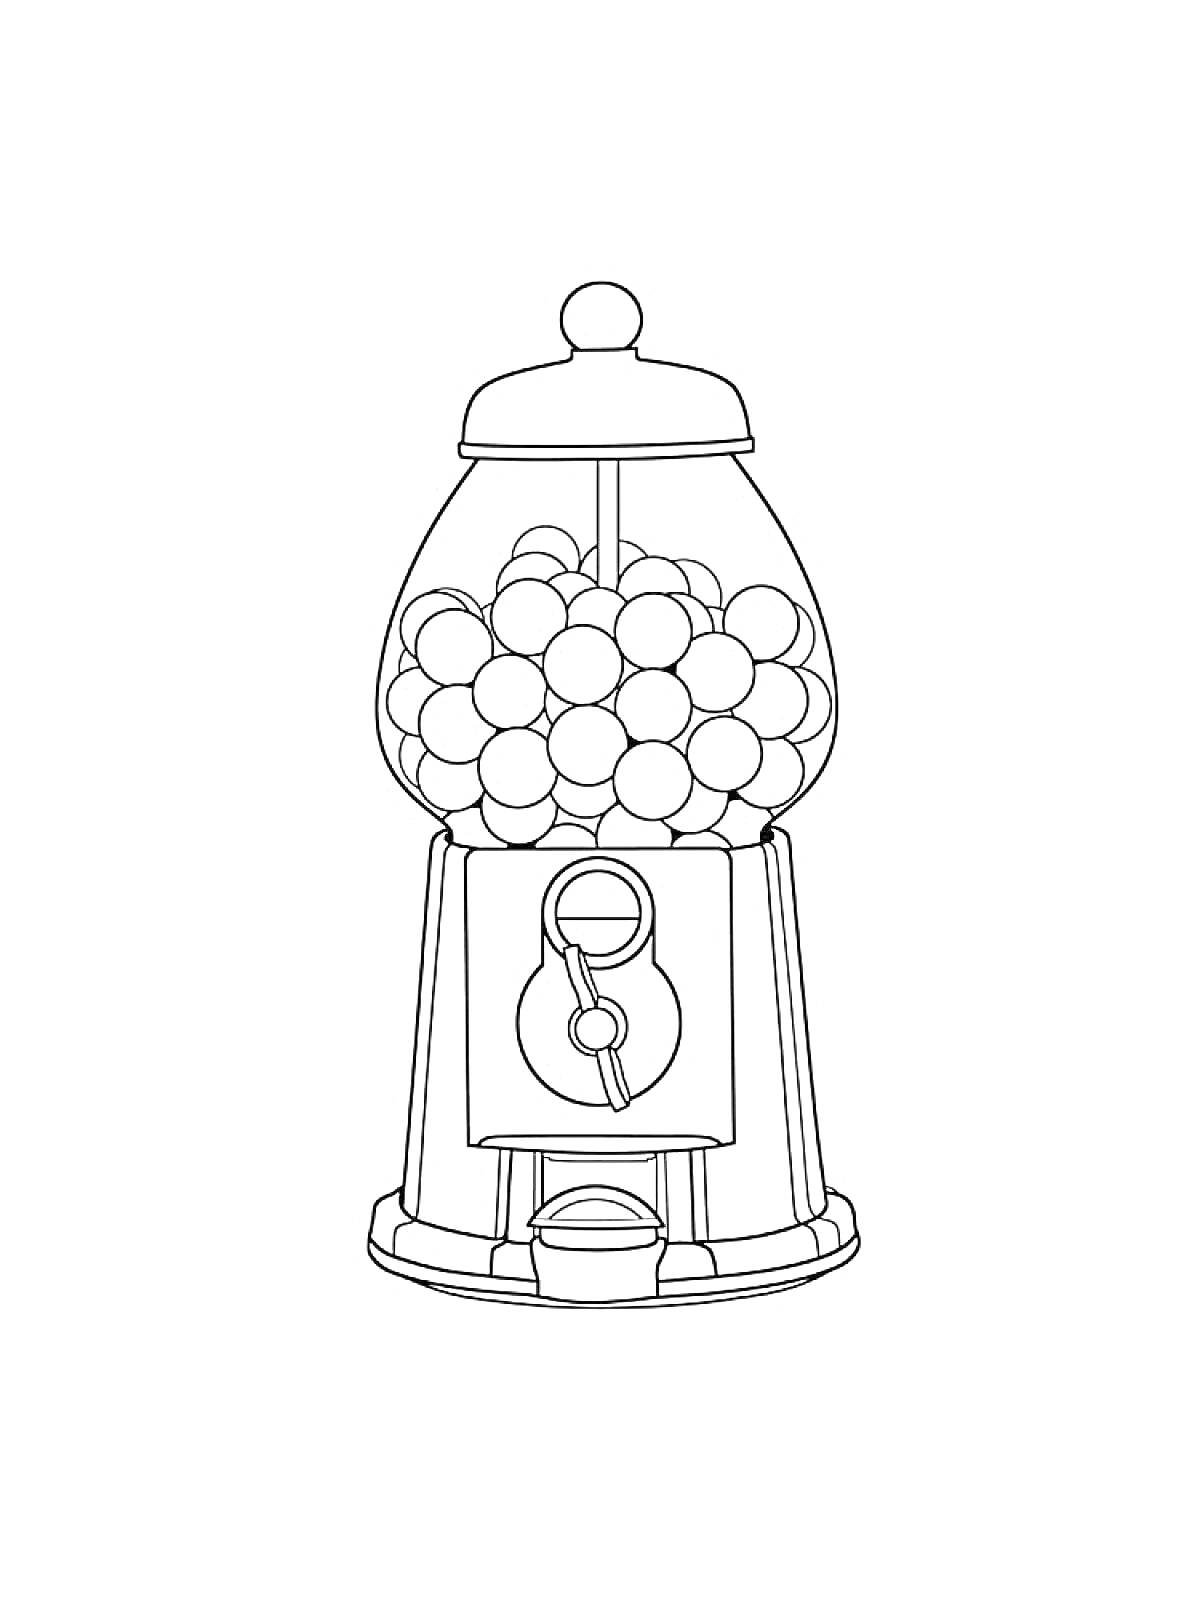 Раскраска Автомат с жевательной резинкой, наполненный шарами-жевательной резинкой, с монетоприемником и ручкой для выдачи жвачки